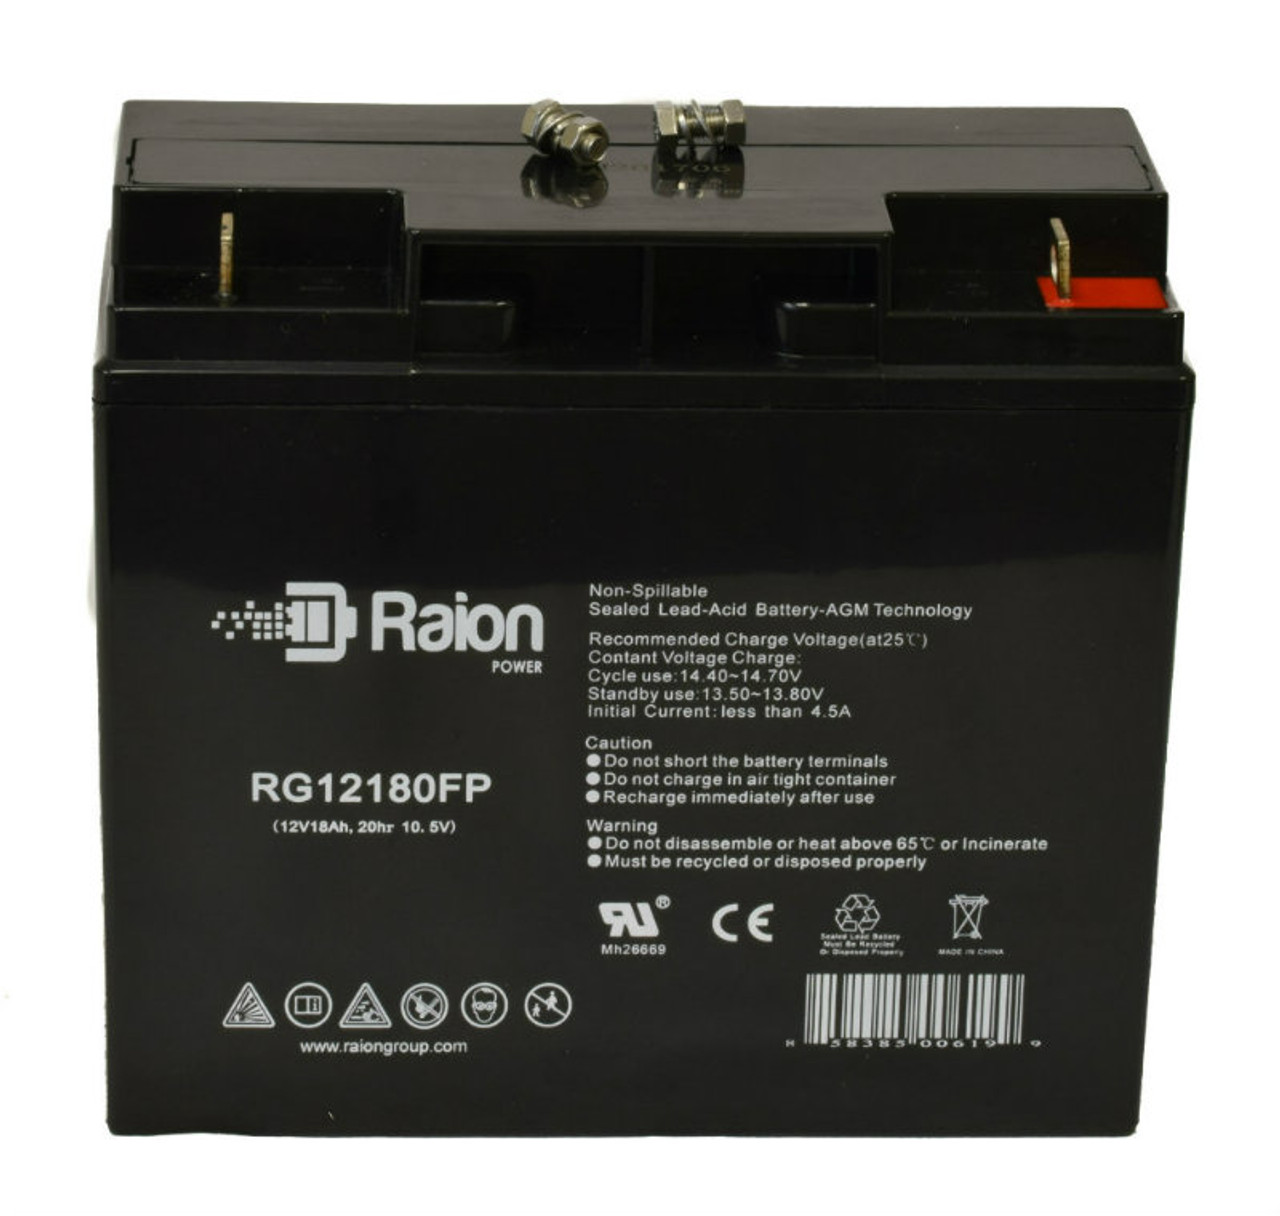 Raion Power RG12180FP 12V 18Ah Lead Acid Battery for IBT Technologies BFP4-12HC